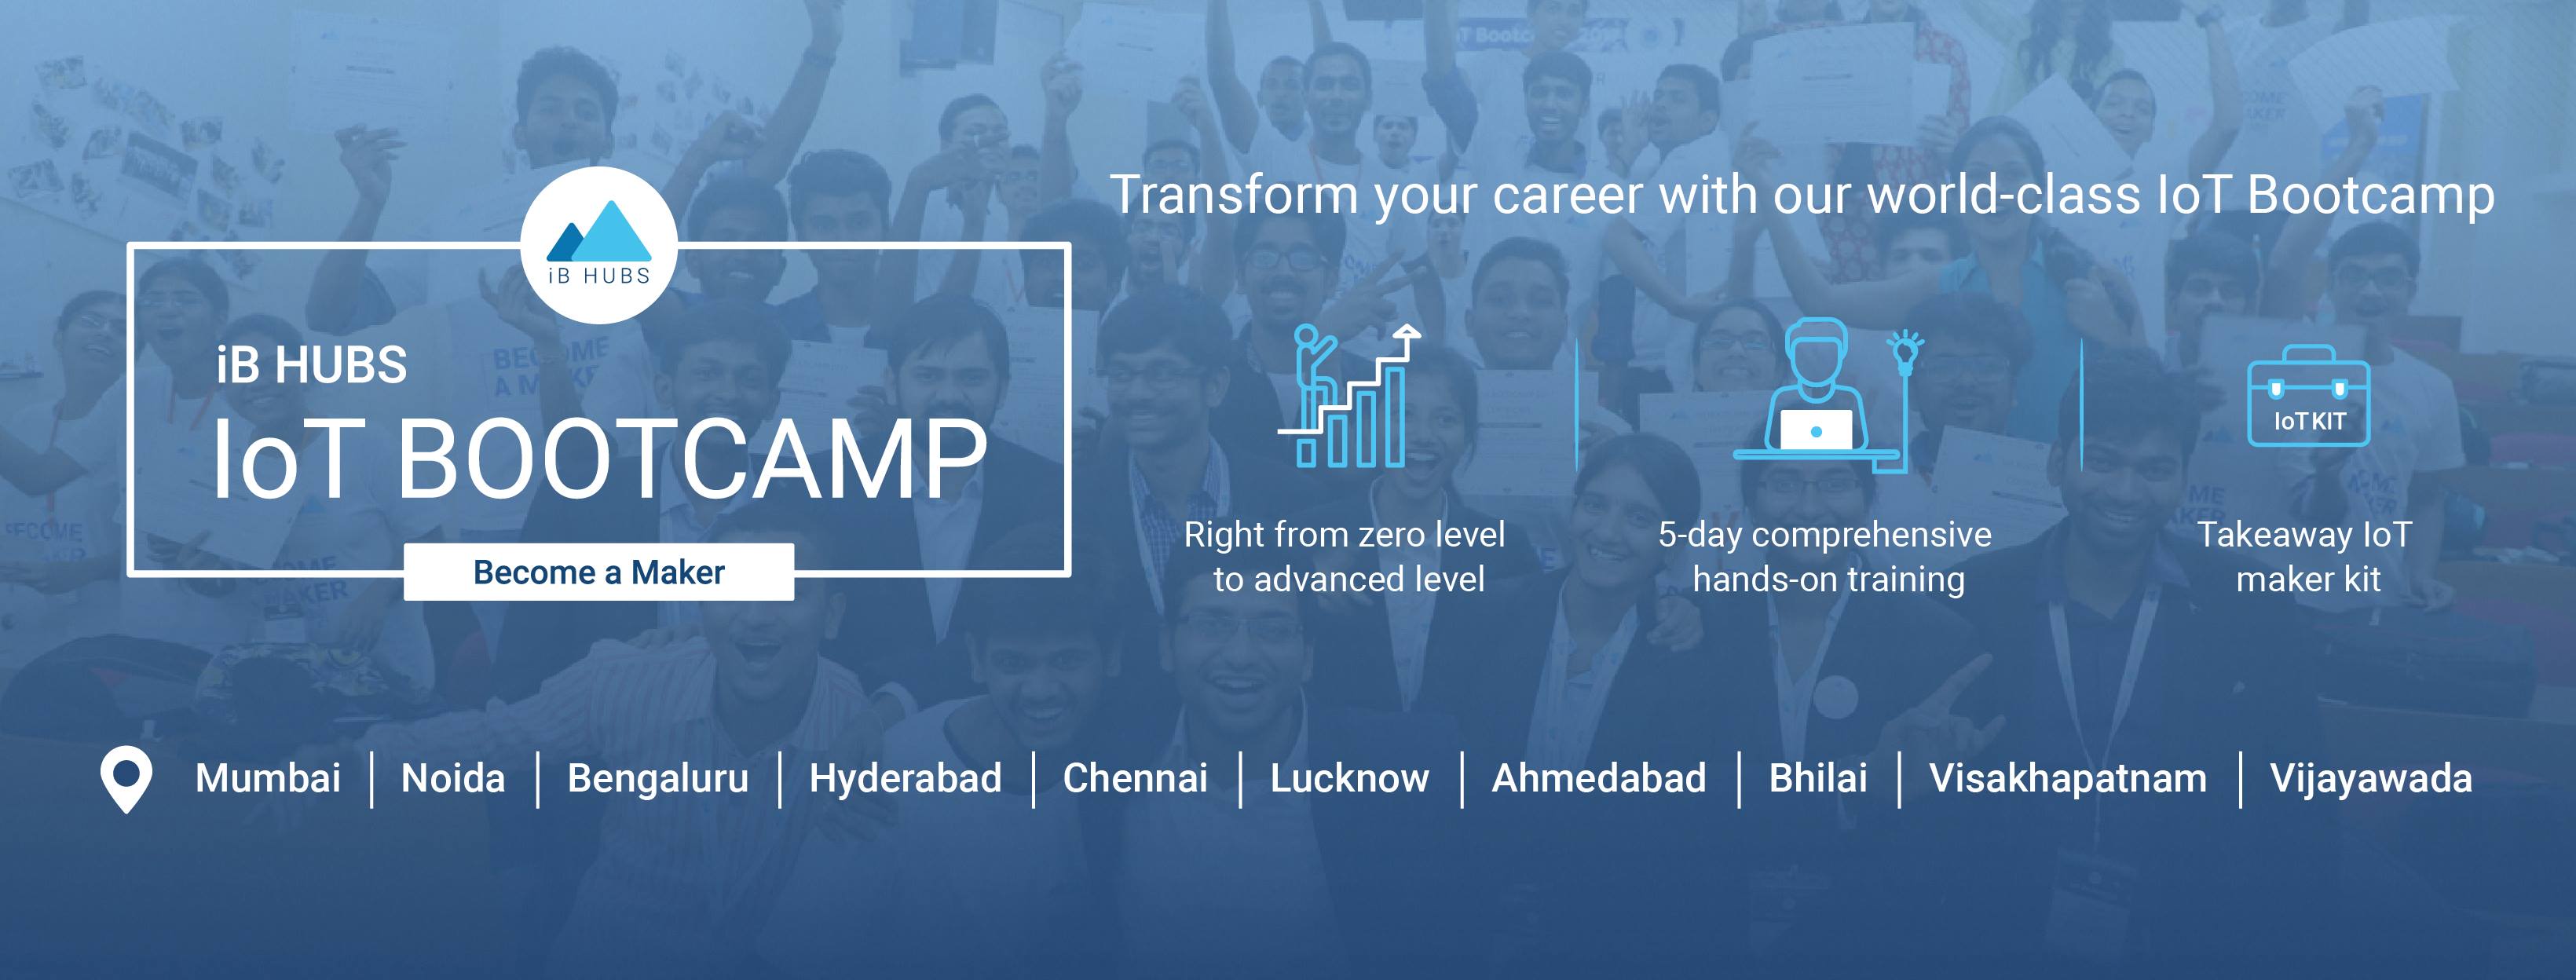 iB Hubs IoT Bootcamp '18, Ahmedabad, Gujarat, India